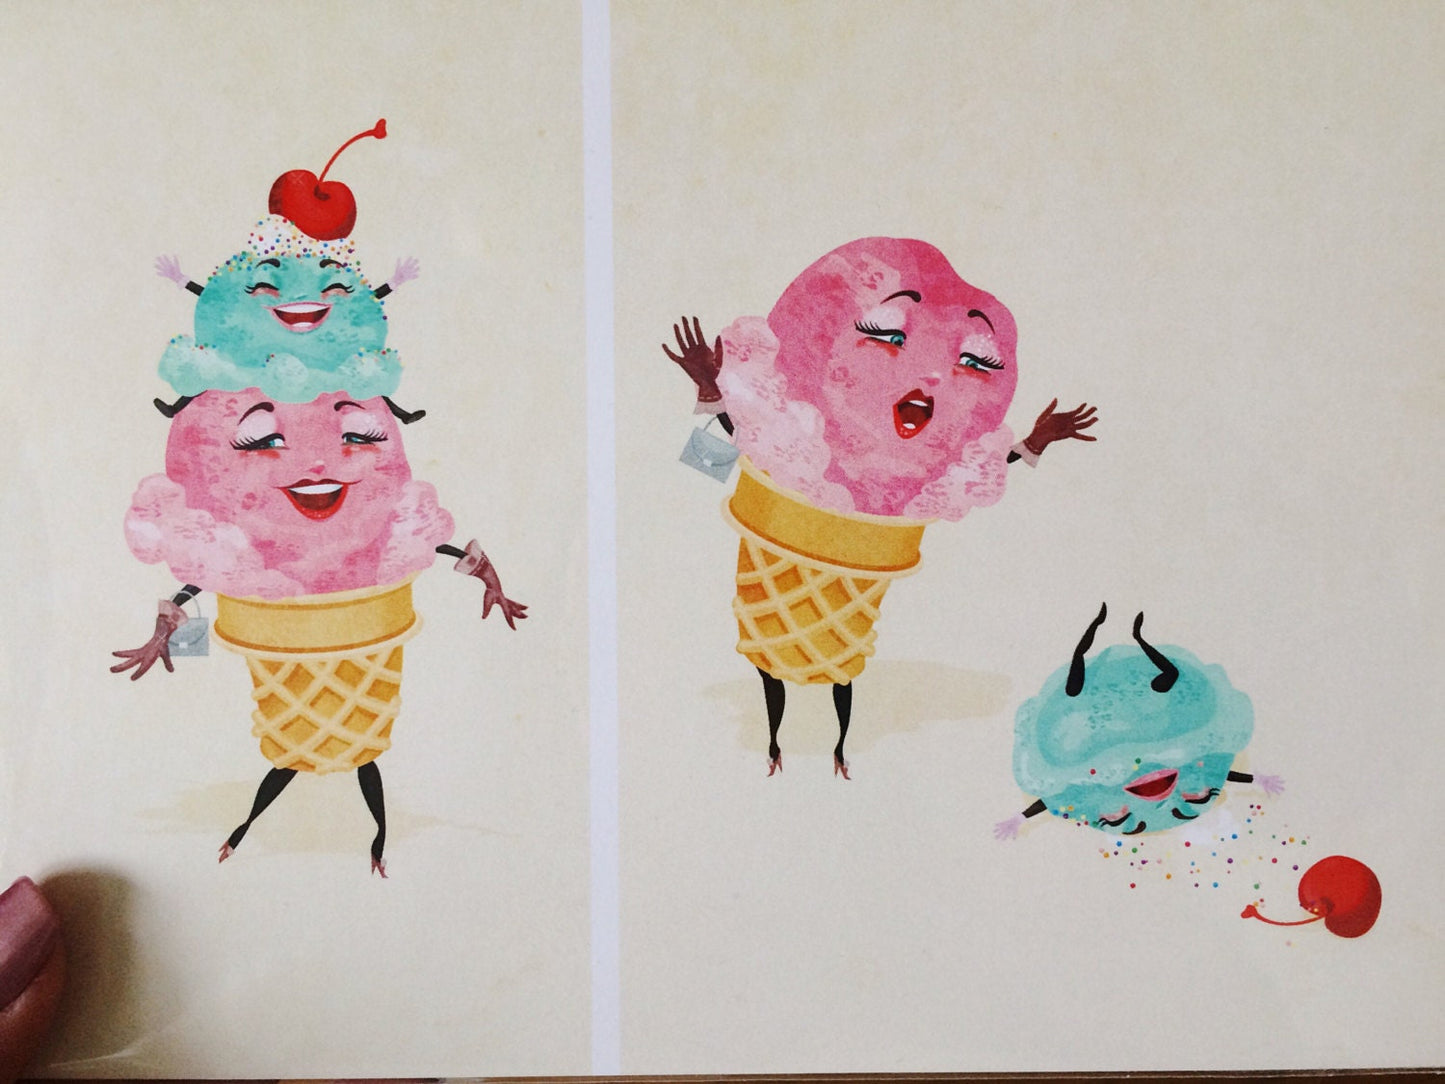 Ice Cream Tragedy 5x7 or 8x10 Regular Print, Dessert Illustration, Original Kitchen Decor, Foodie Art